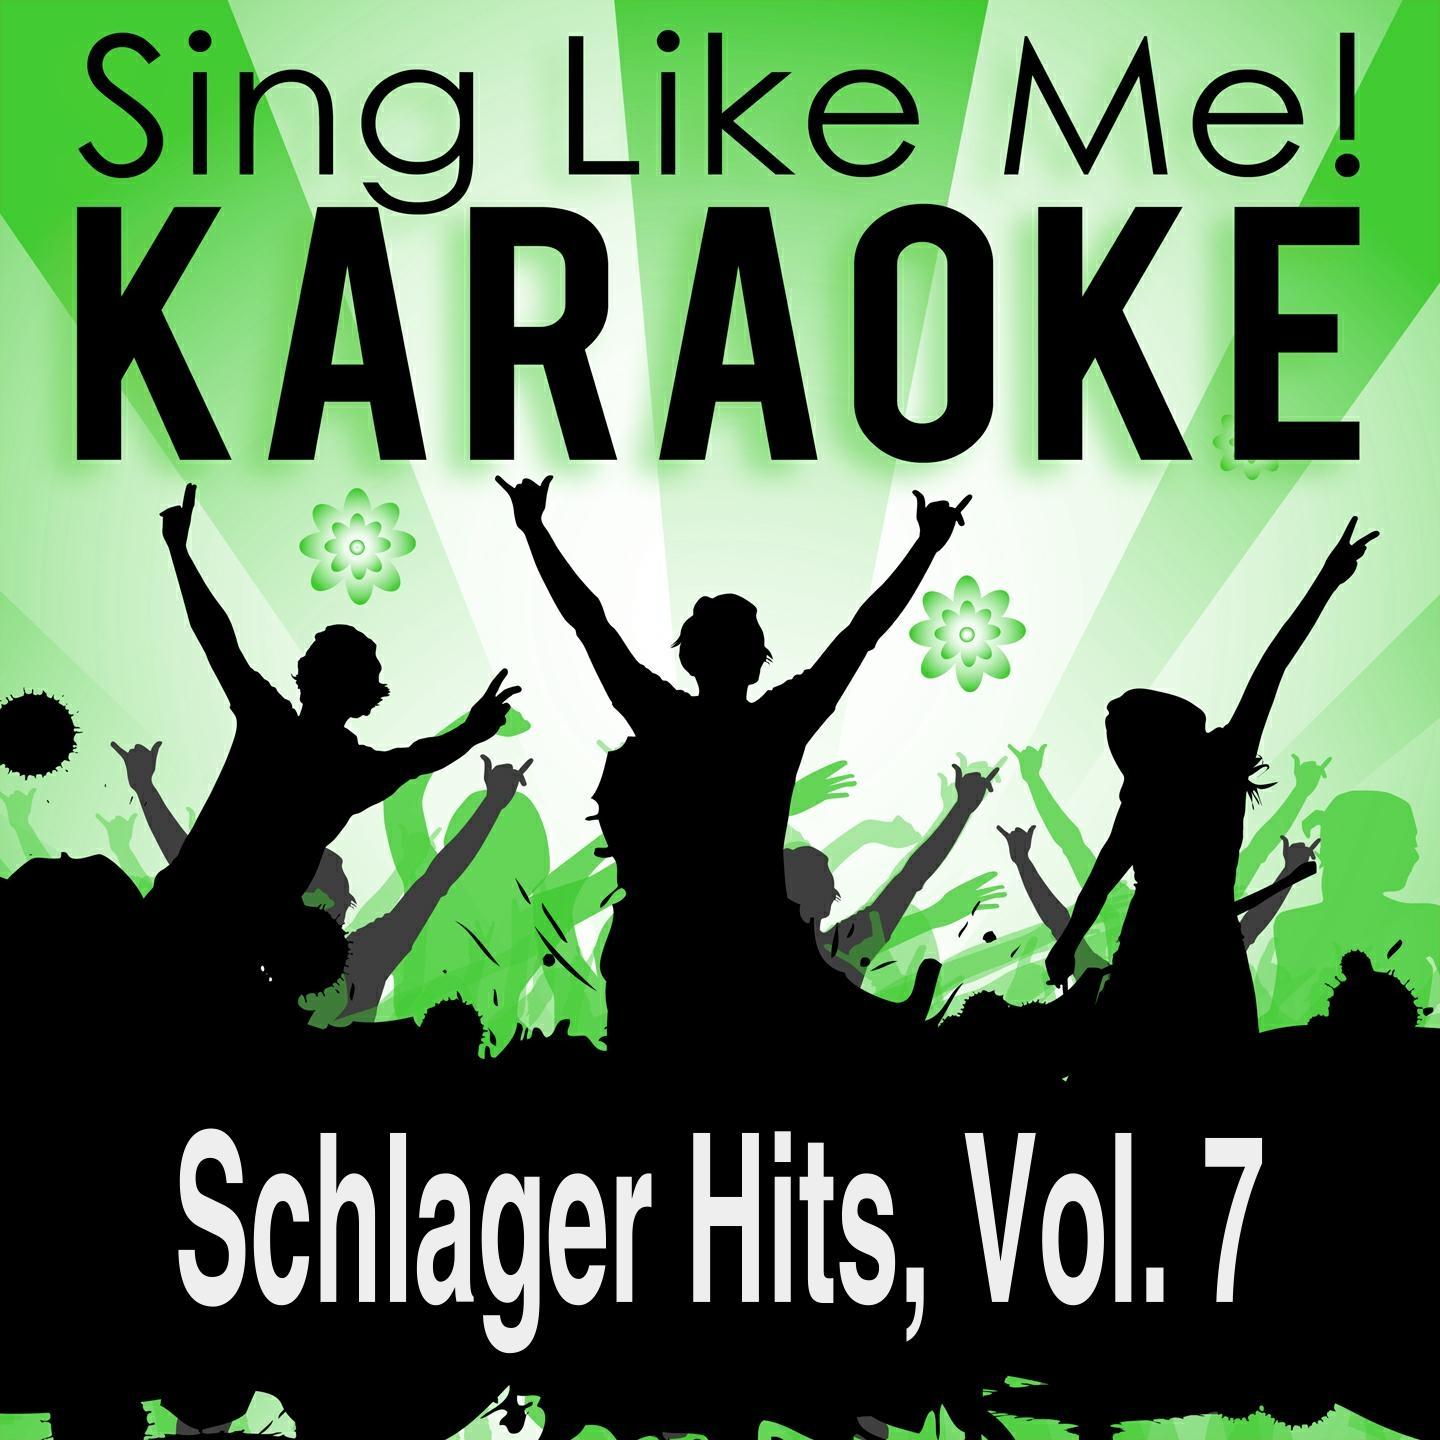 Schon seit 100 Jahren (Single Edit) [Karaoke Version With Guide Melody] (Originally Performed By Der BVB Jahrhundertchor)